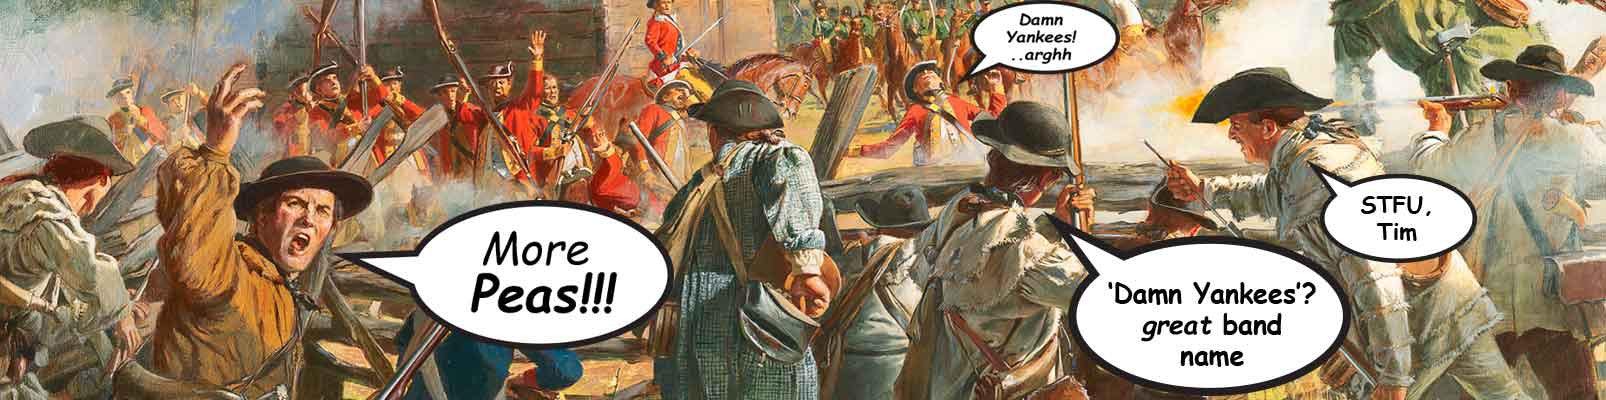 Inkfiblog military slang revolutionary war 'more peas!' 'Damn Yankees'